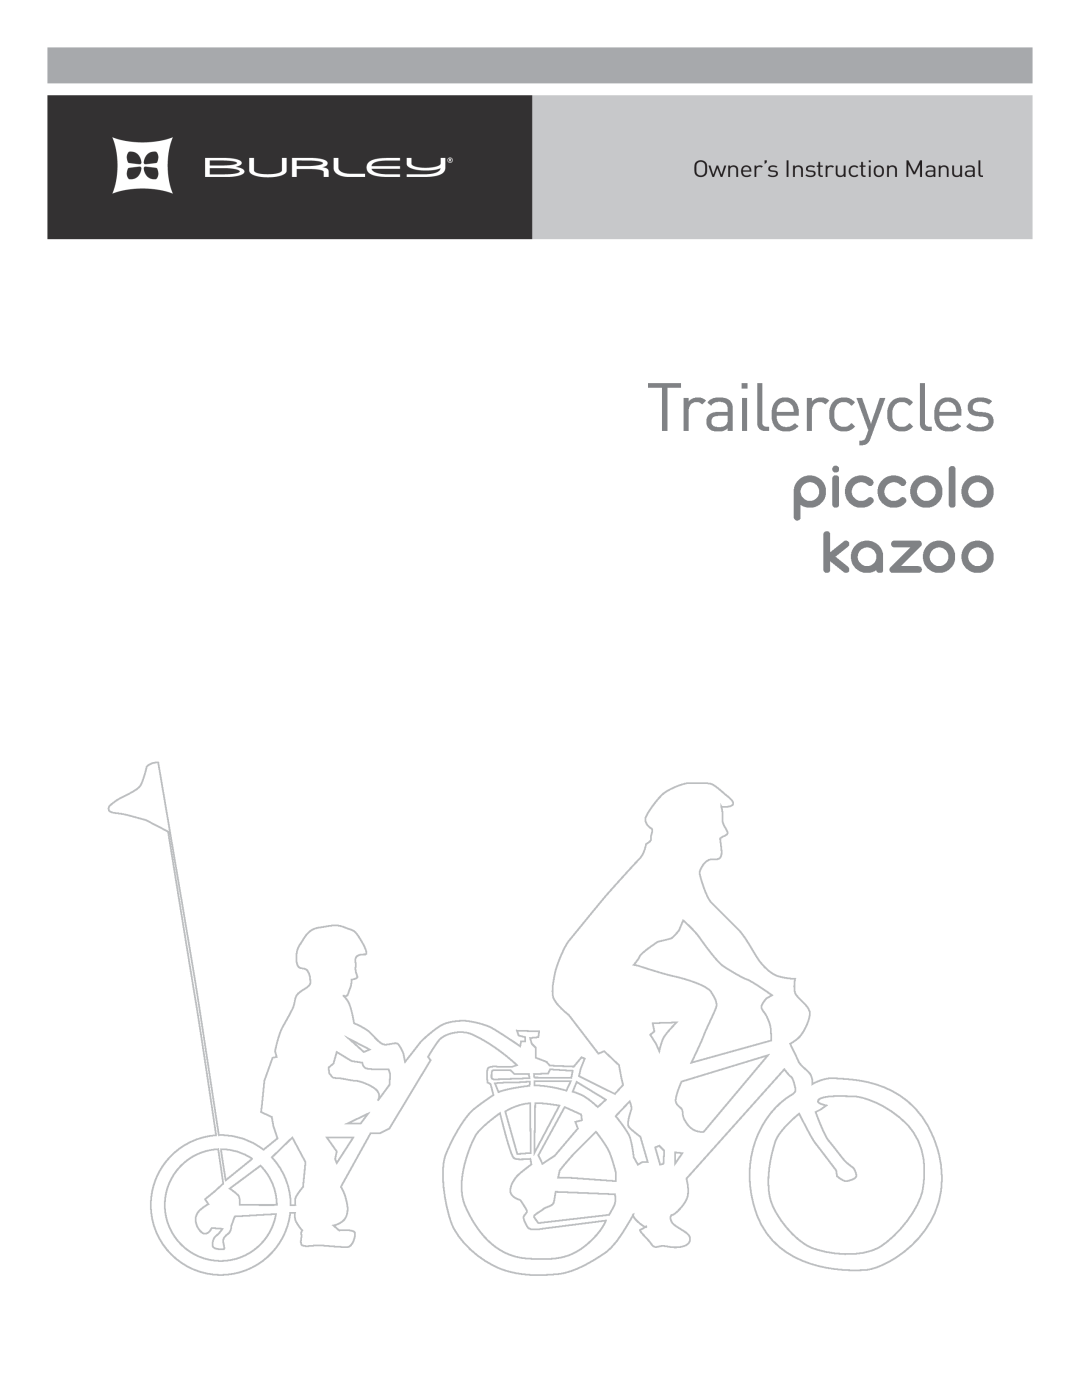 Burley Kazoo, Piccolo instruction manual Trailercycles, piccolo kazoo, Owner’s Instruction Manual 